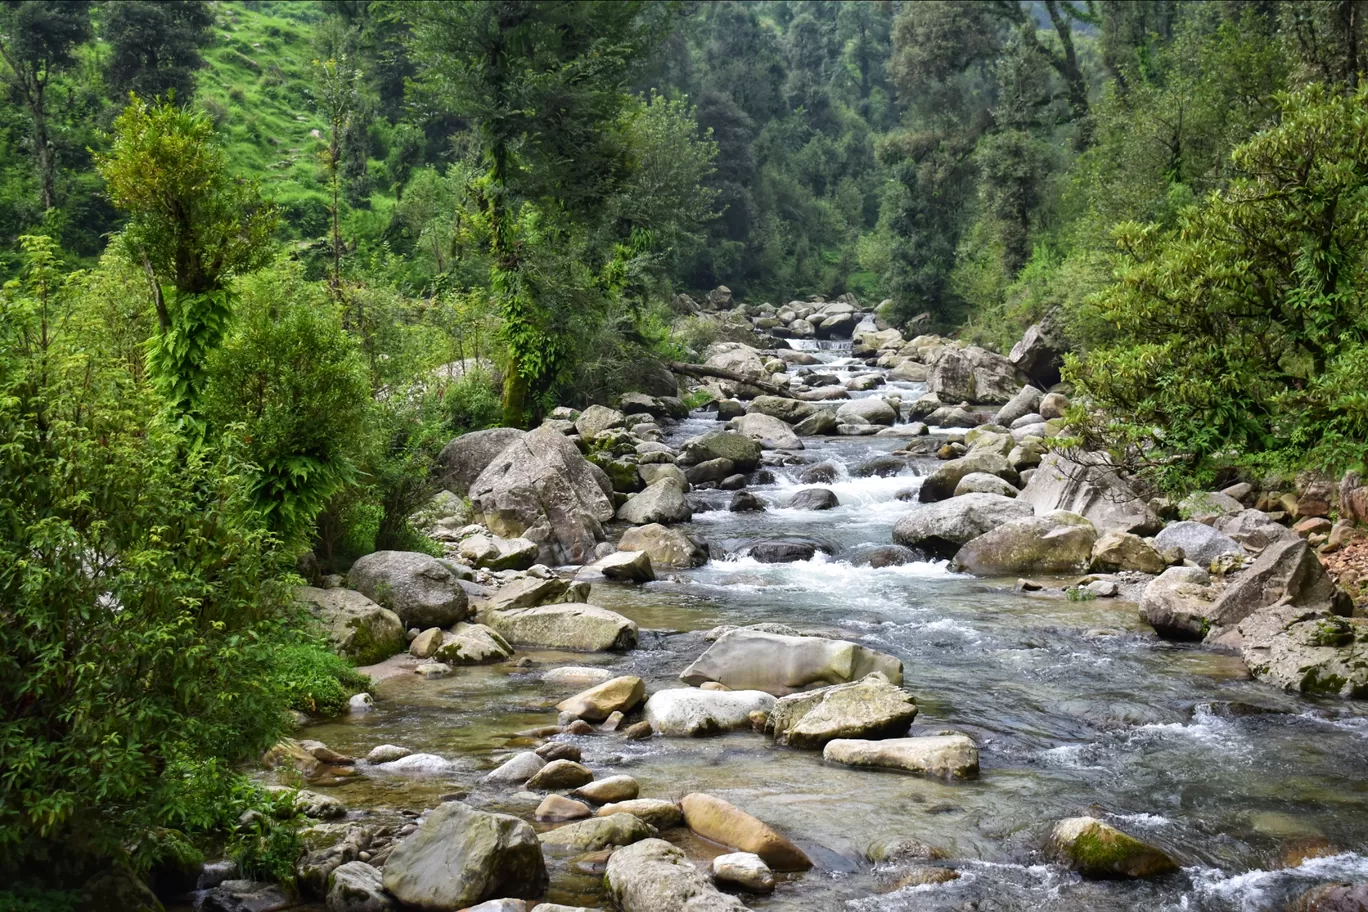 Photo of Himachal Pradesh By Somya Rakshit